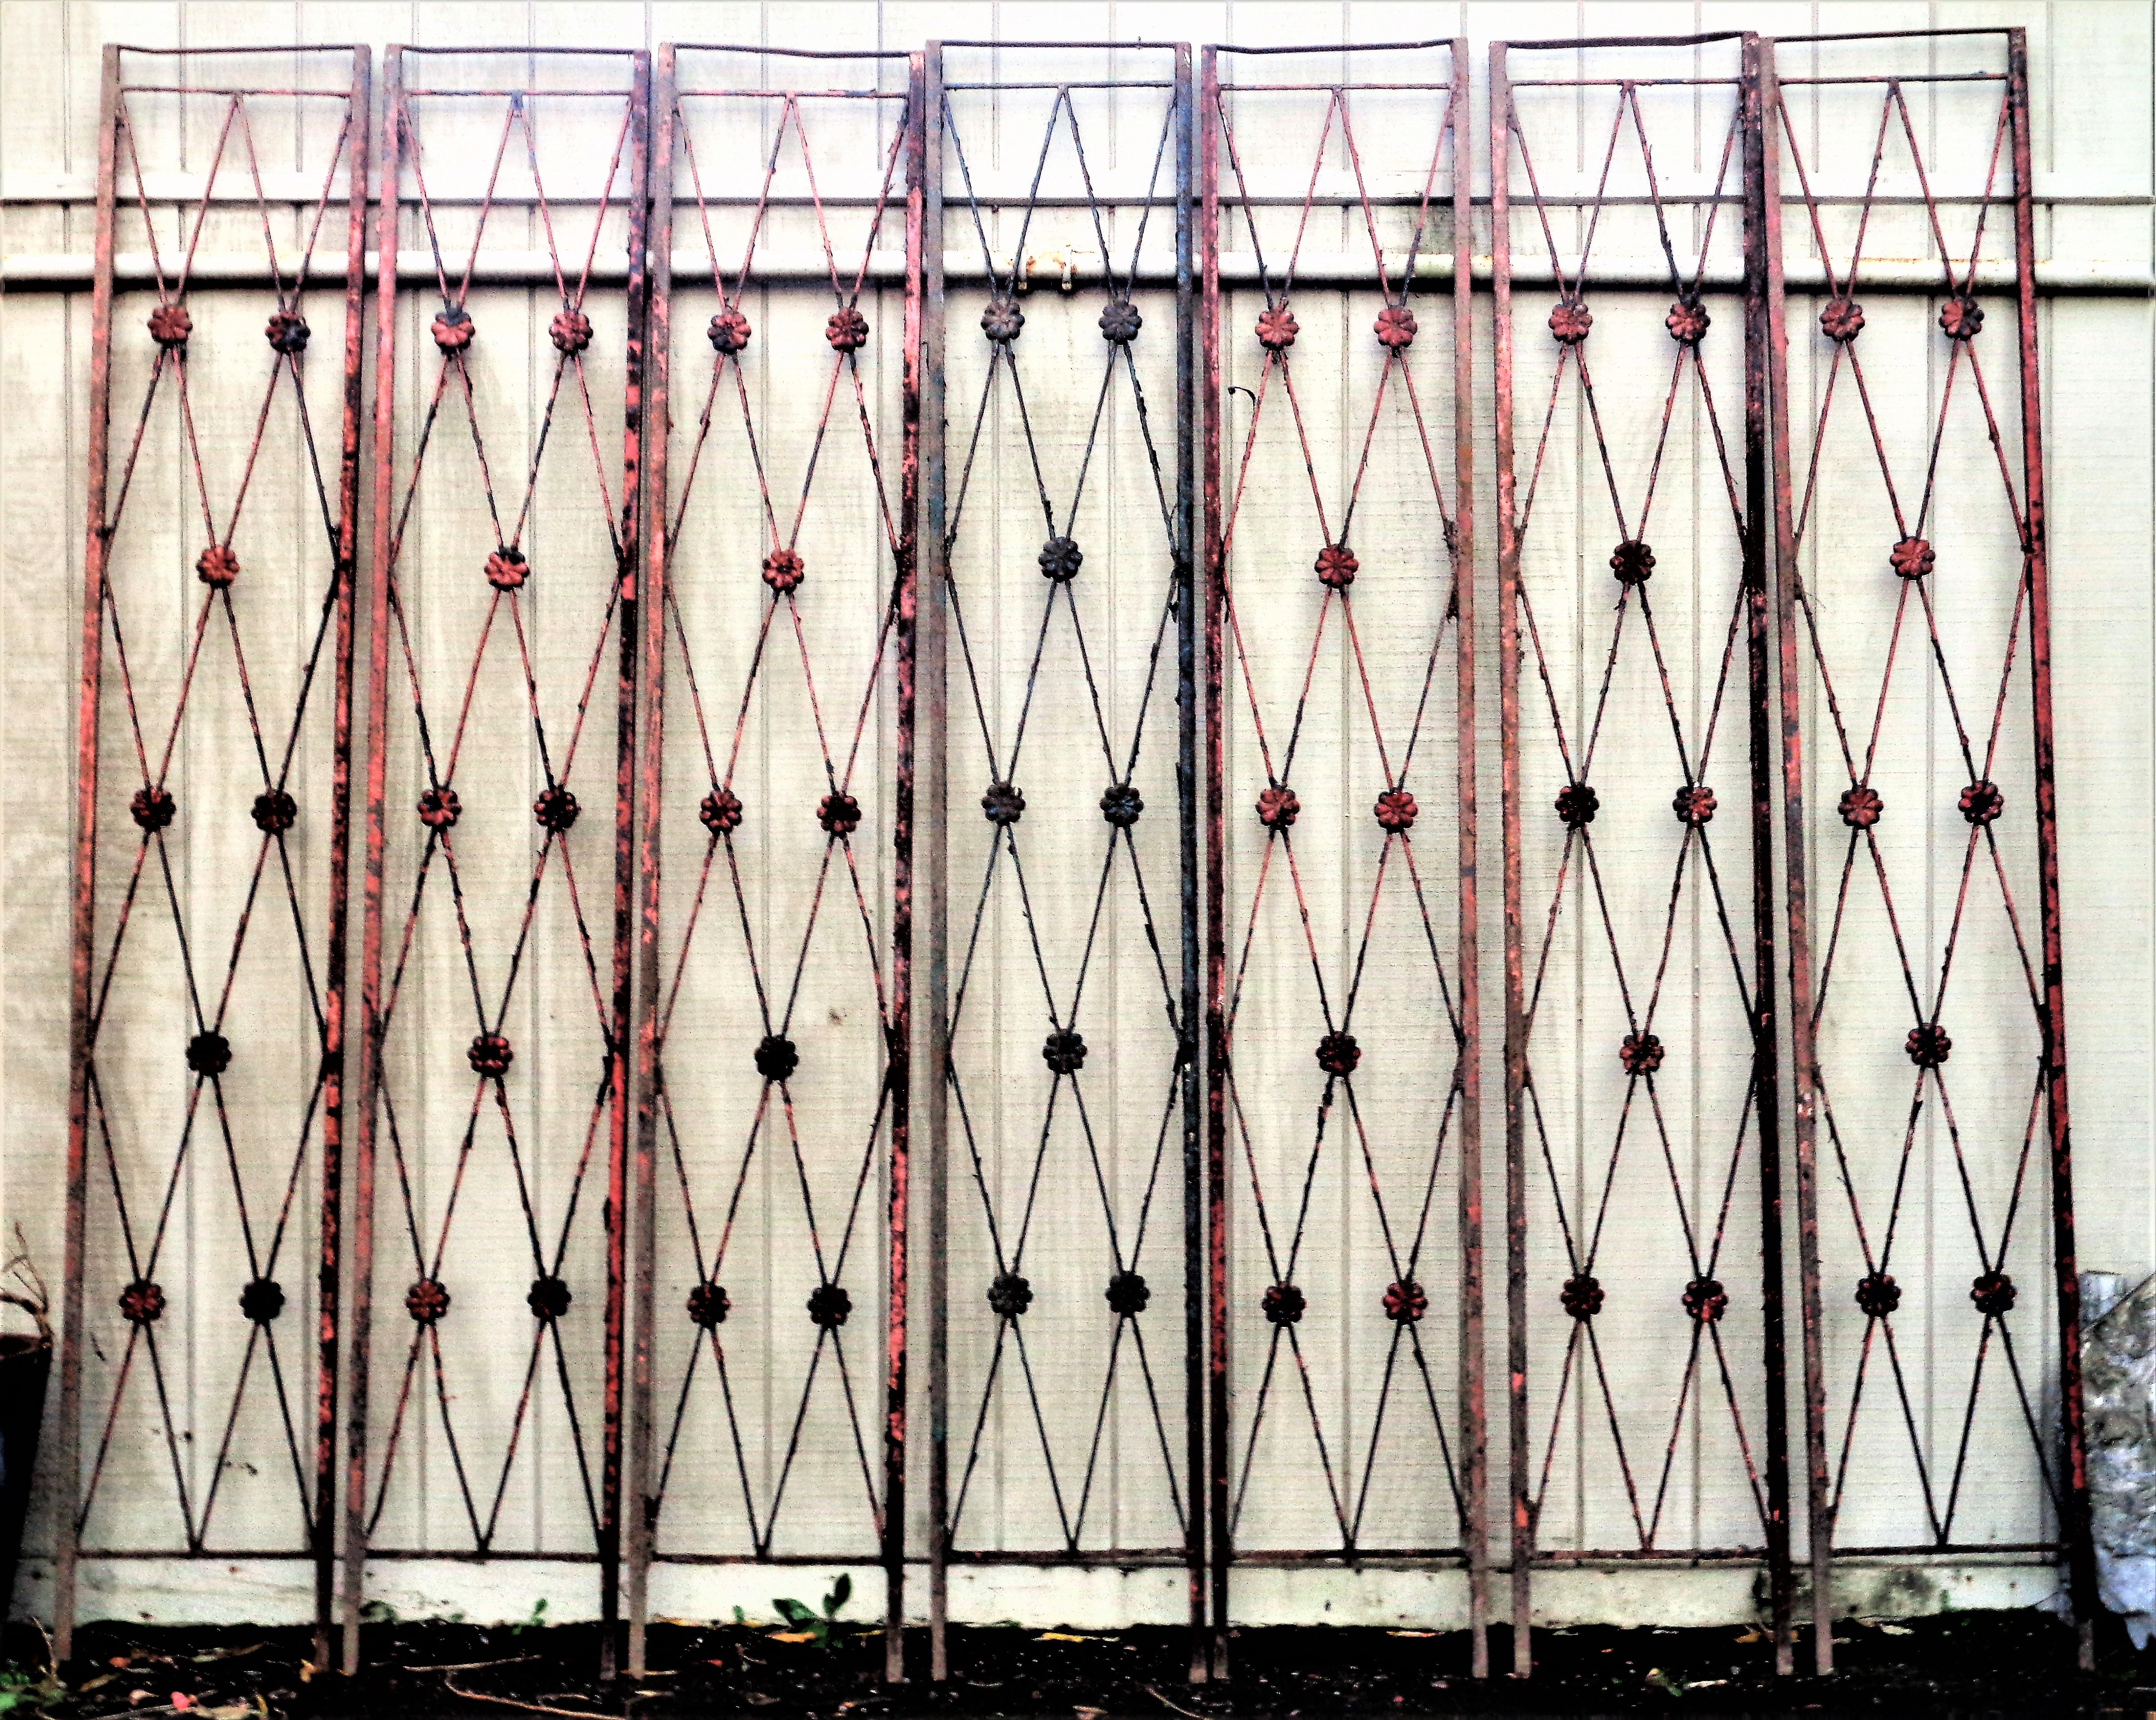 Eine Gruppe von sieben architektonischen Eisenpaneelen im klassischen Directoire-Stil mit abblätternder Oberfläche
schwarze Farbe über der lachsrot lackierten Originaloberfläche. Massives Eisen mit gekreuztem X und erhabenen, detaillierten Rosetten